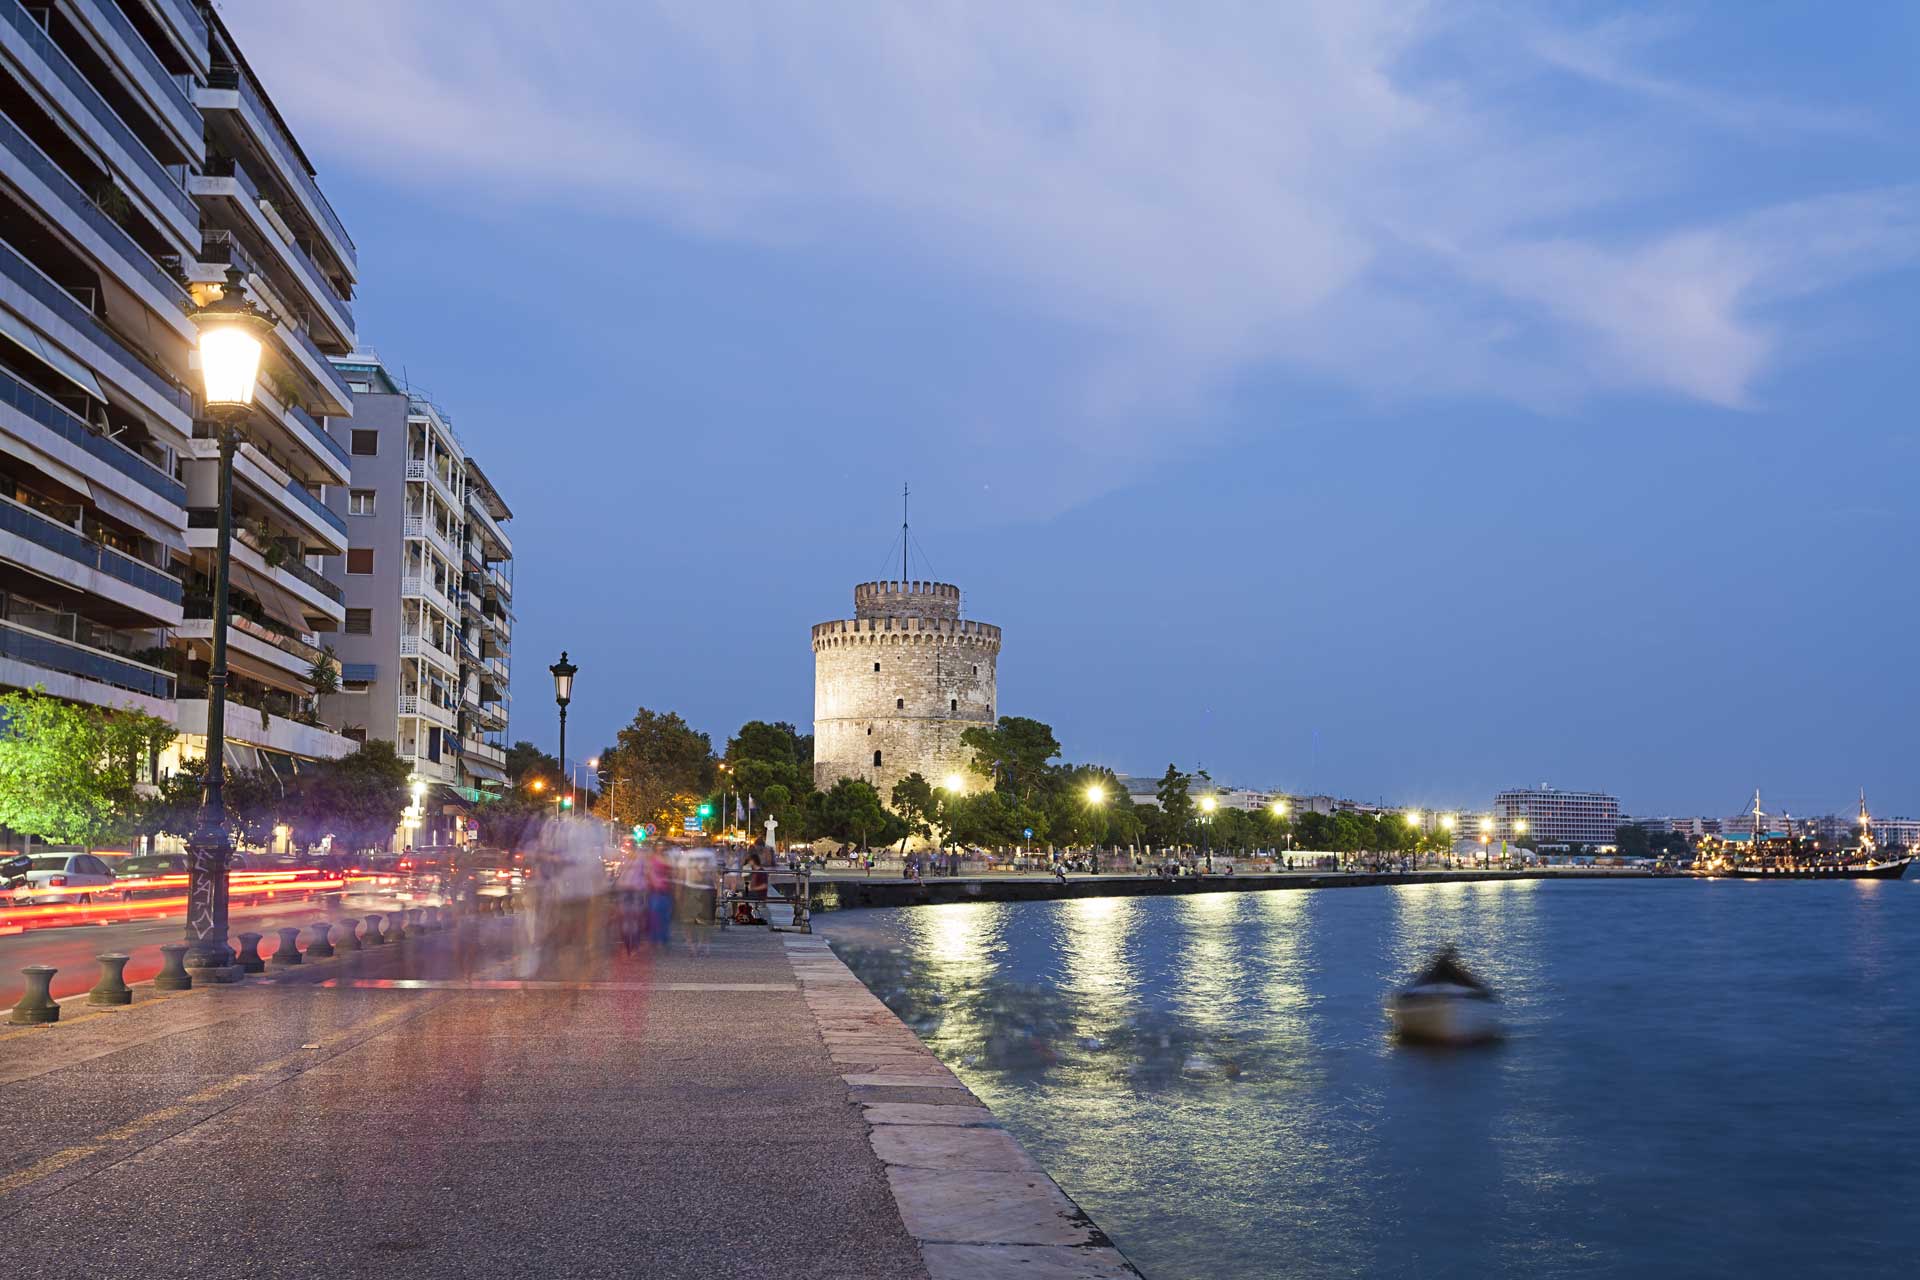 Στους 20 προτεινόμενους προορισμούς στη Γαλλία για το 2020 η Θεσσαλονίκη και ο Όλυμπος